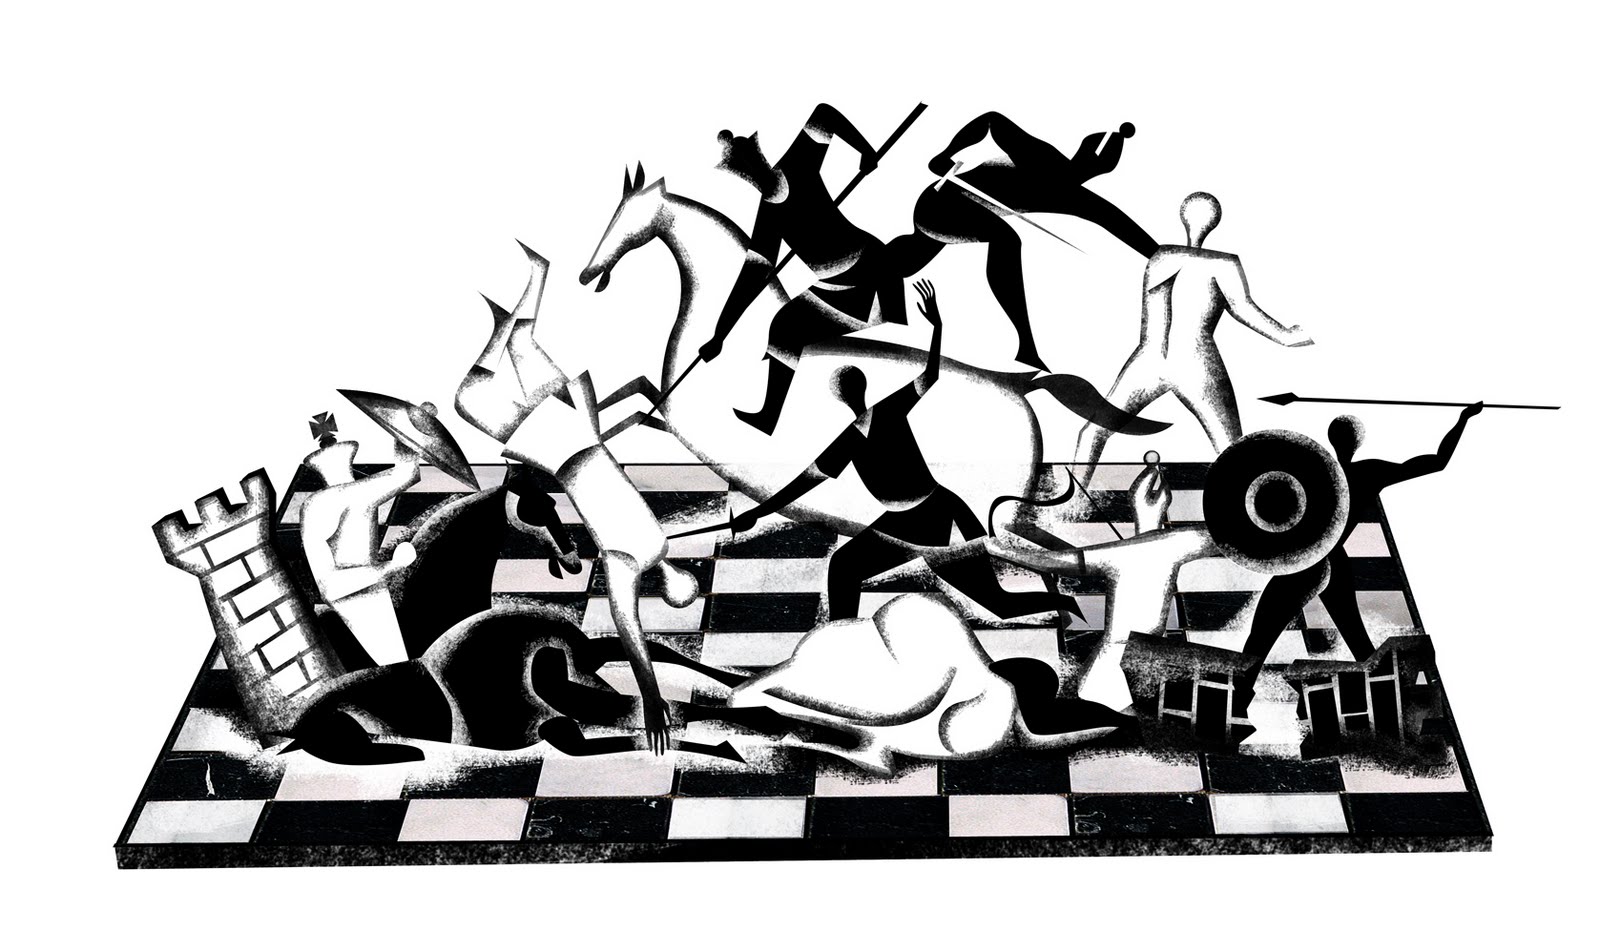 Filosofia Hoje: A vida é como um jogo xadrez. As peças já estão no